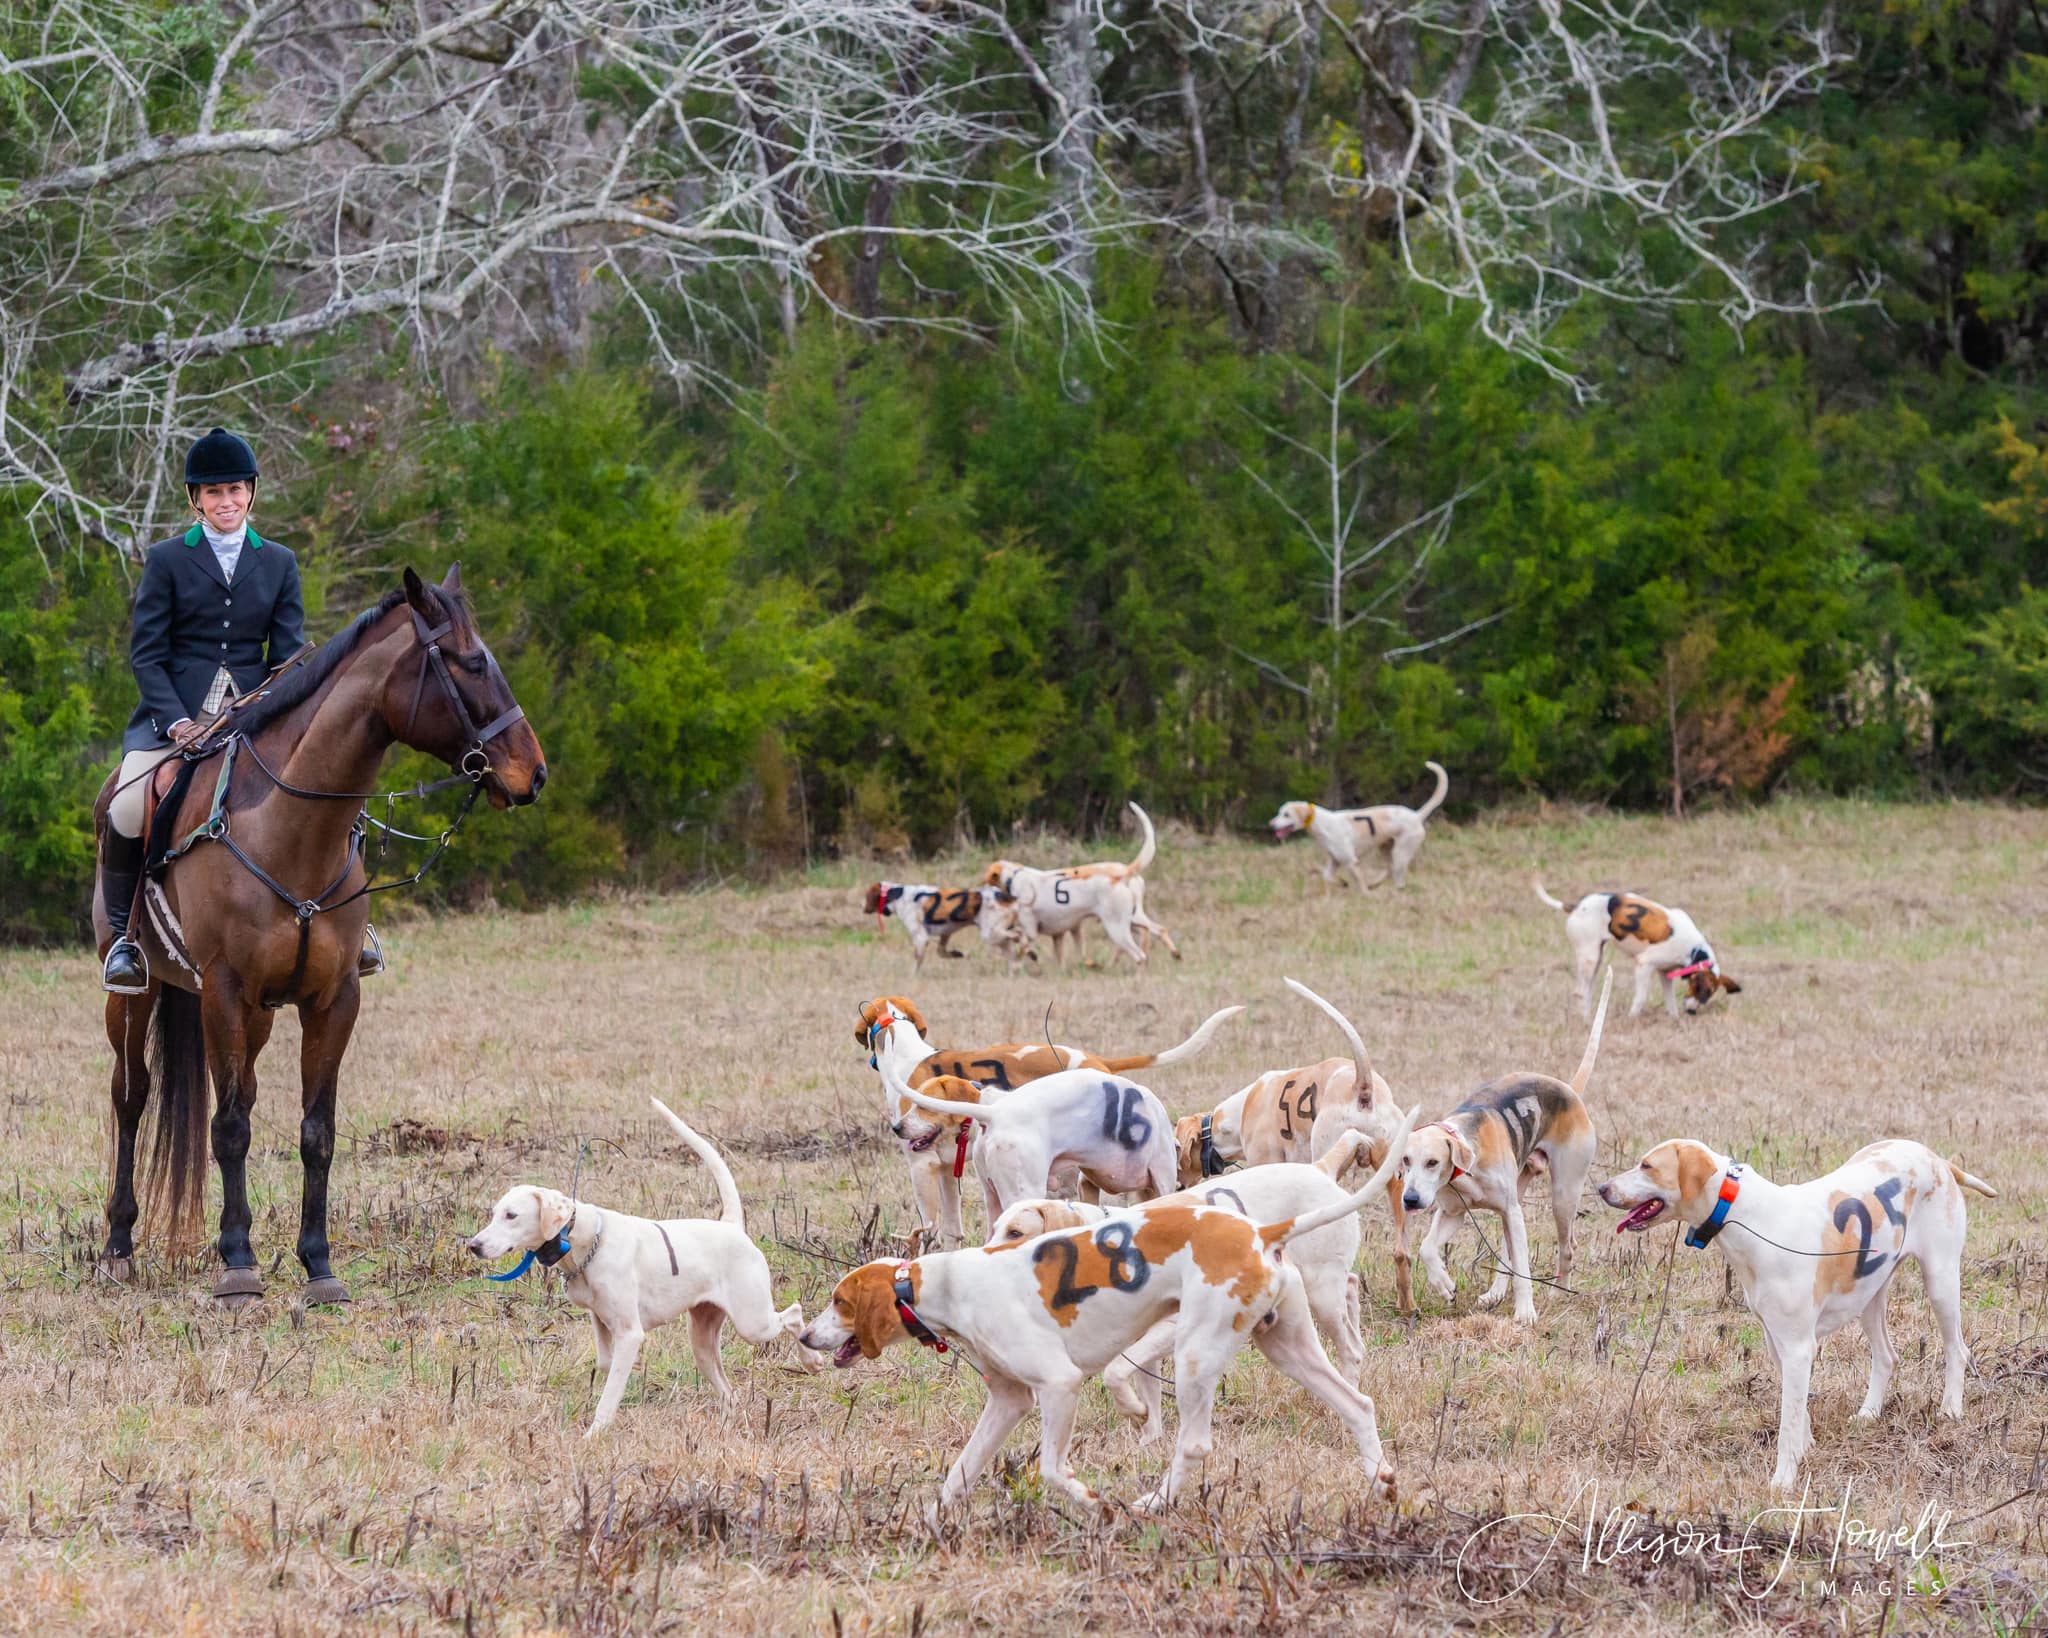 Belle Meade hound trials